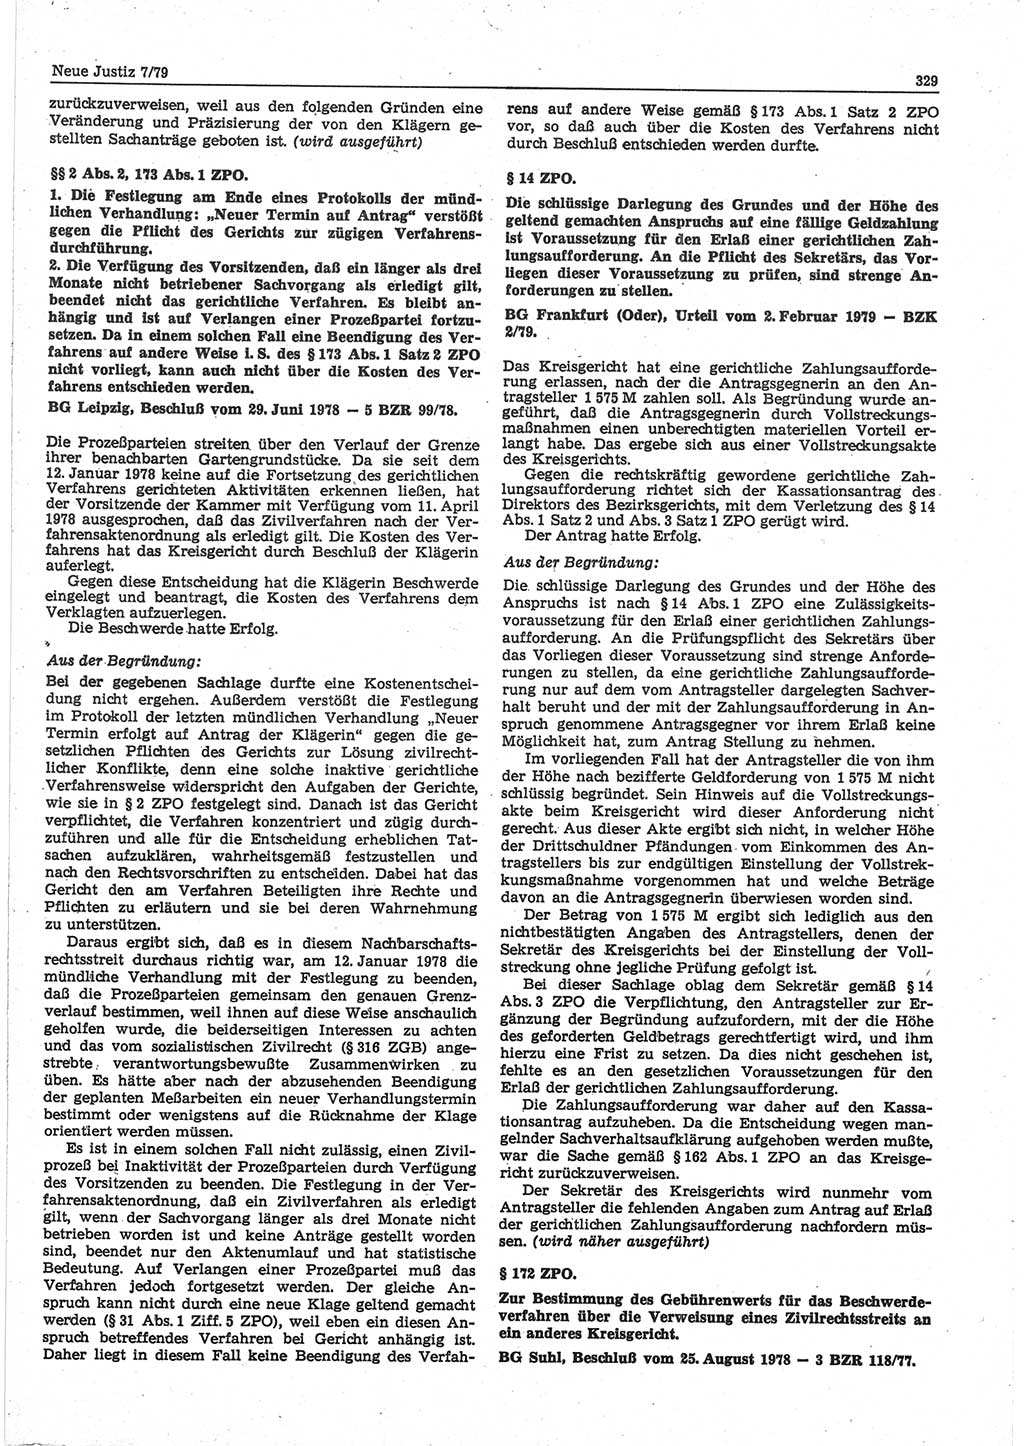 Neue Justiz (NJ), Zeitschrift für sozialistisches Recht und Gesetzlichkeit [Deutsche Demokratische Republik (DDR)], 33. Jahrgang 1979, Seite 329 (NJ DDR 1979, S. 329)